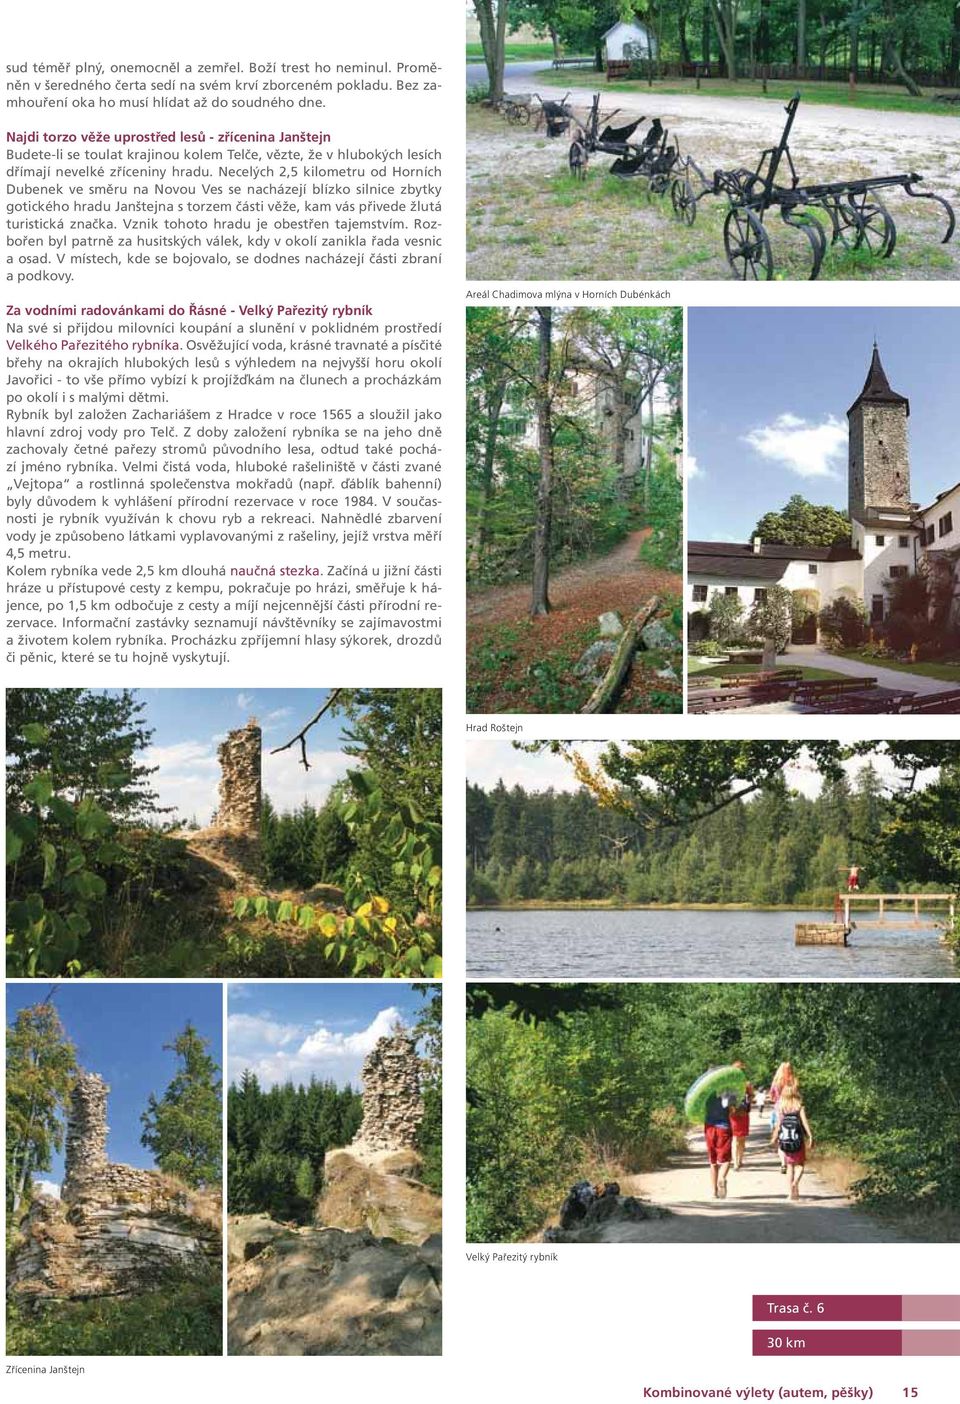 Necelých 2,5 kilometru od Horních Dubenek ve směru na Novou Ves se nacházejí blízko silnice zbytky gotického hradu Janštejna s torzem části věže, kam vás přivede žlutá turistická značka.